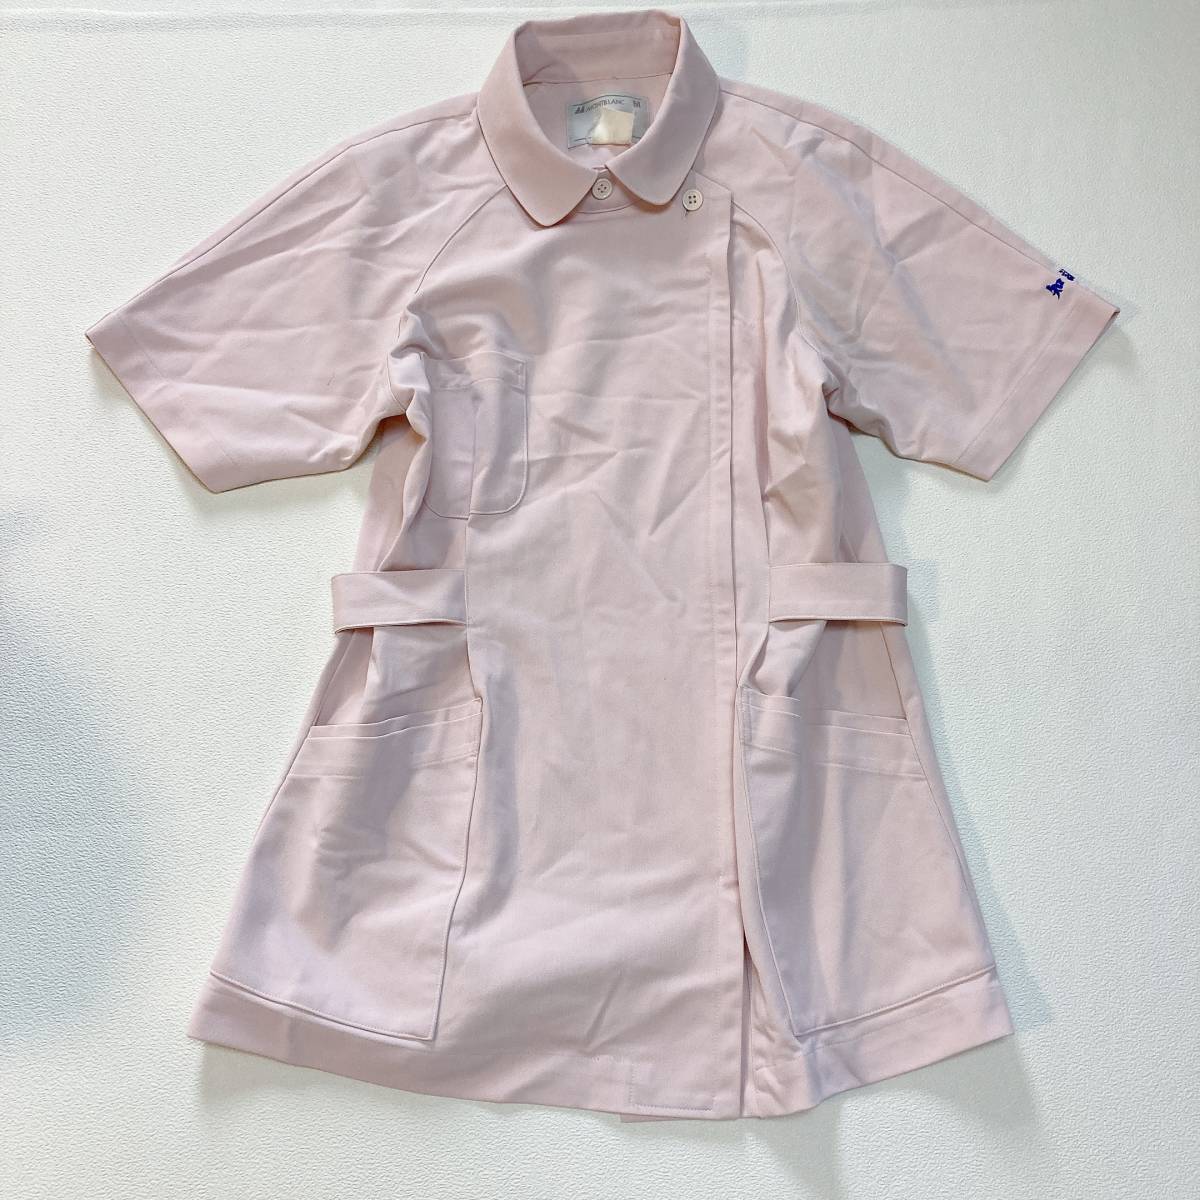 N5 ナース服 まとめ 5点セット ワンピース 上着 水色 白 ピンク 看護師 コスプレ ナース 制服 M L LLの画像3